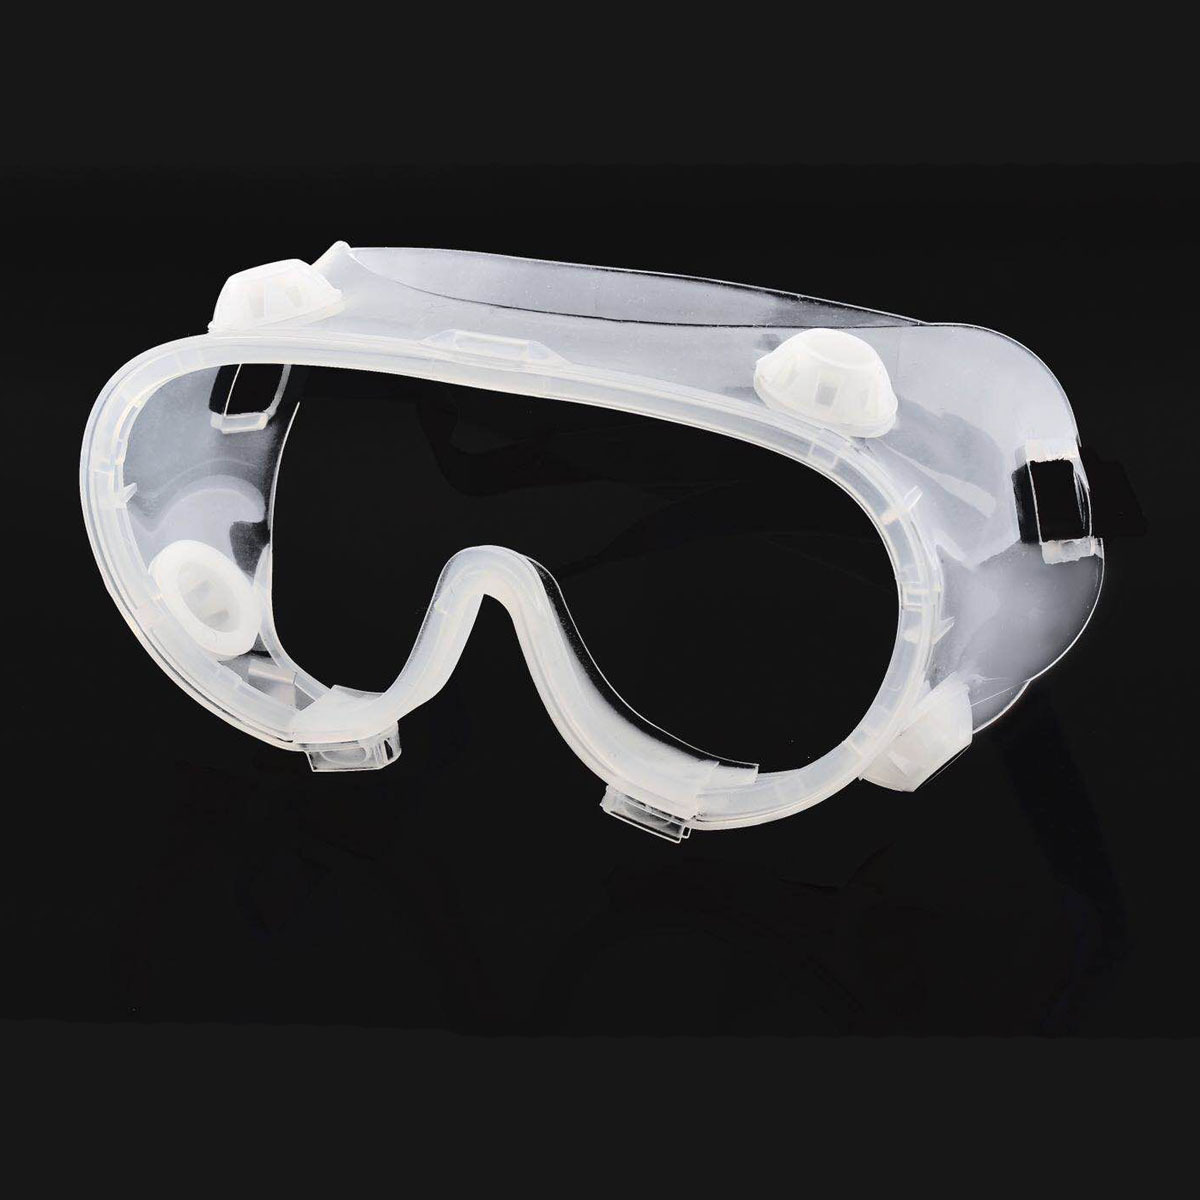 산업 연구 자전거 타기를위한 투명 보호 안경 안전 고글 안티-방풍 방풍 작업 안전 안경